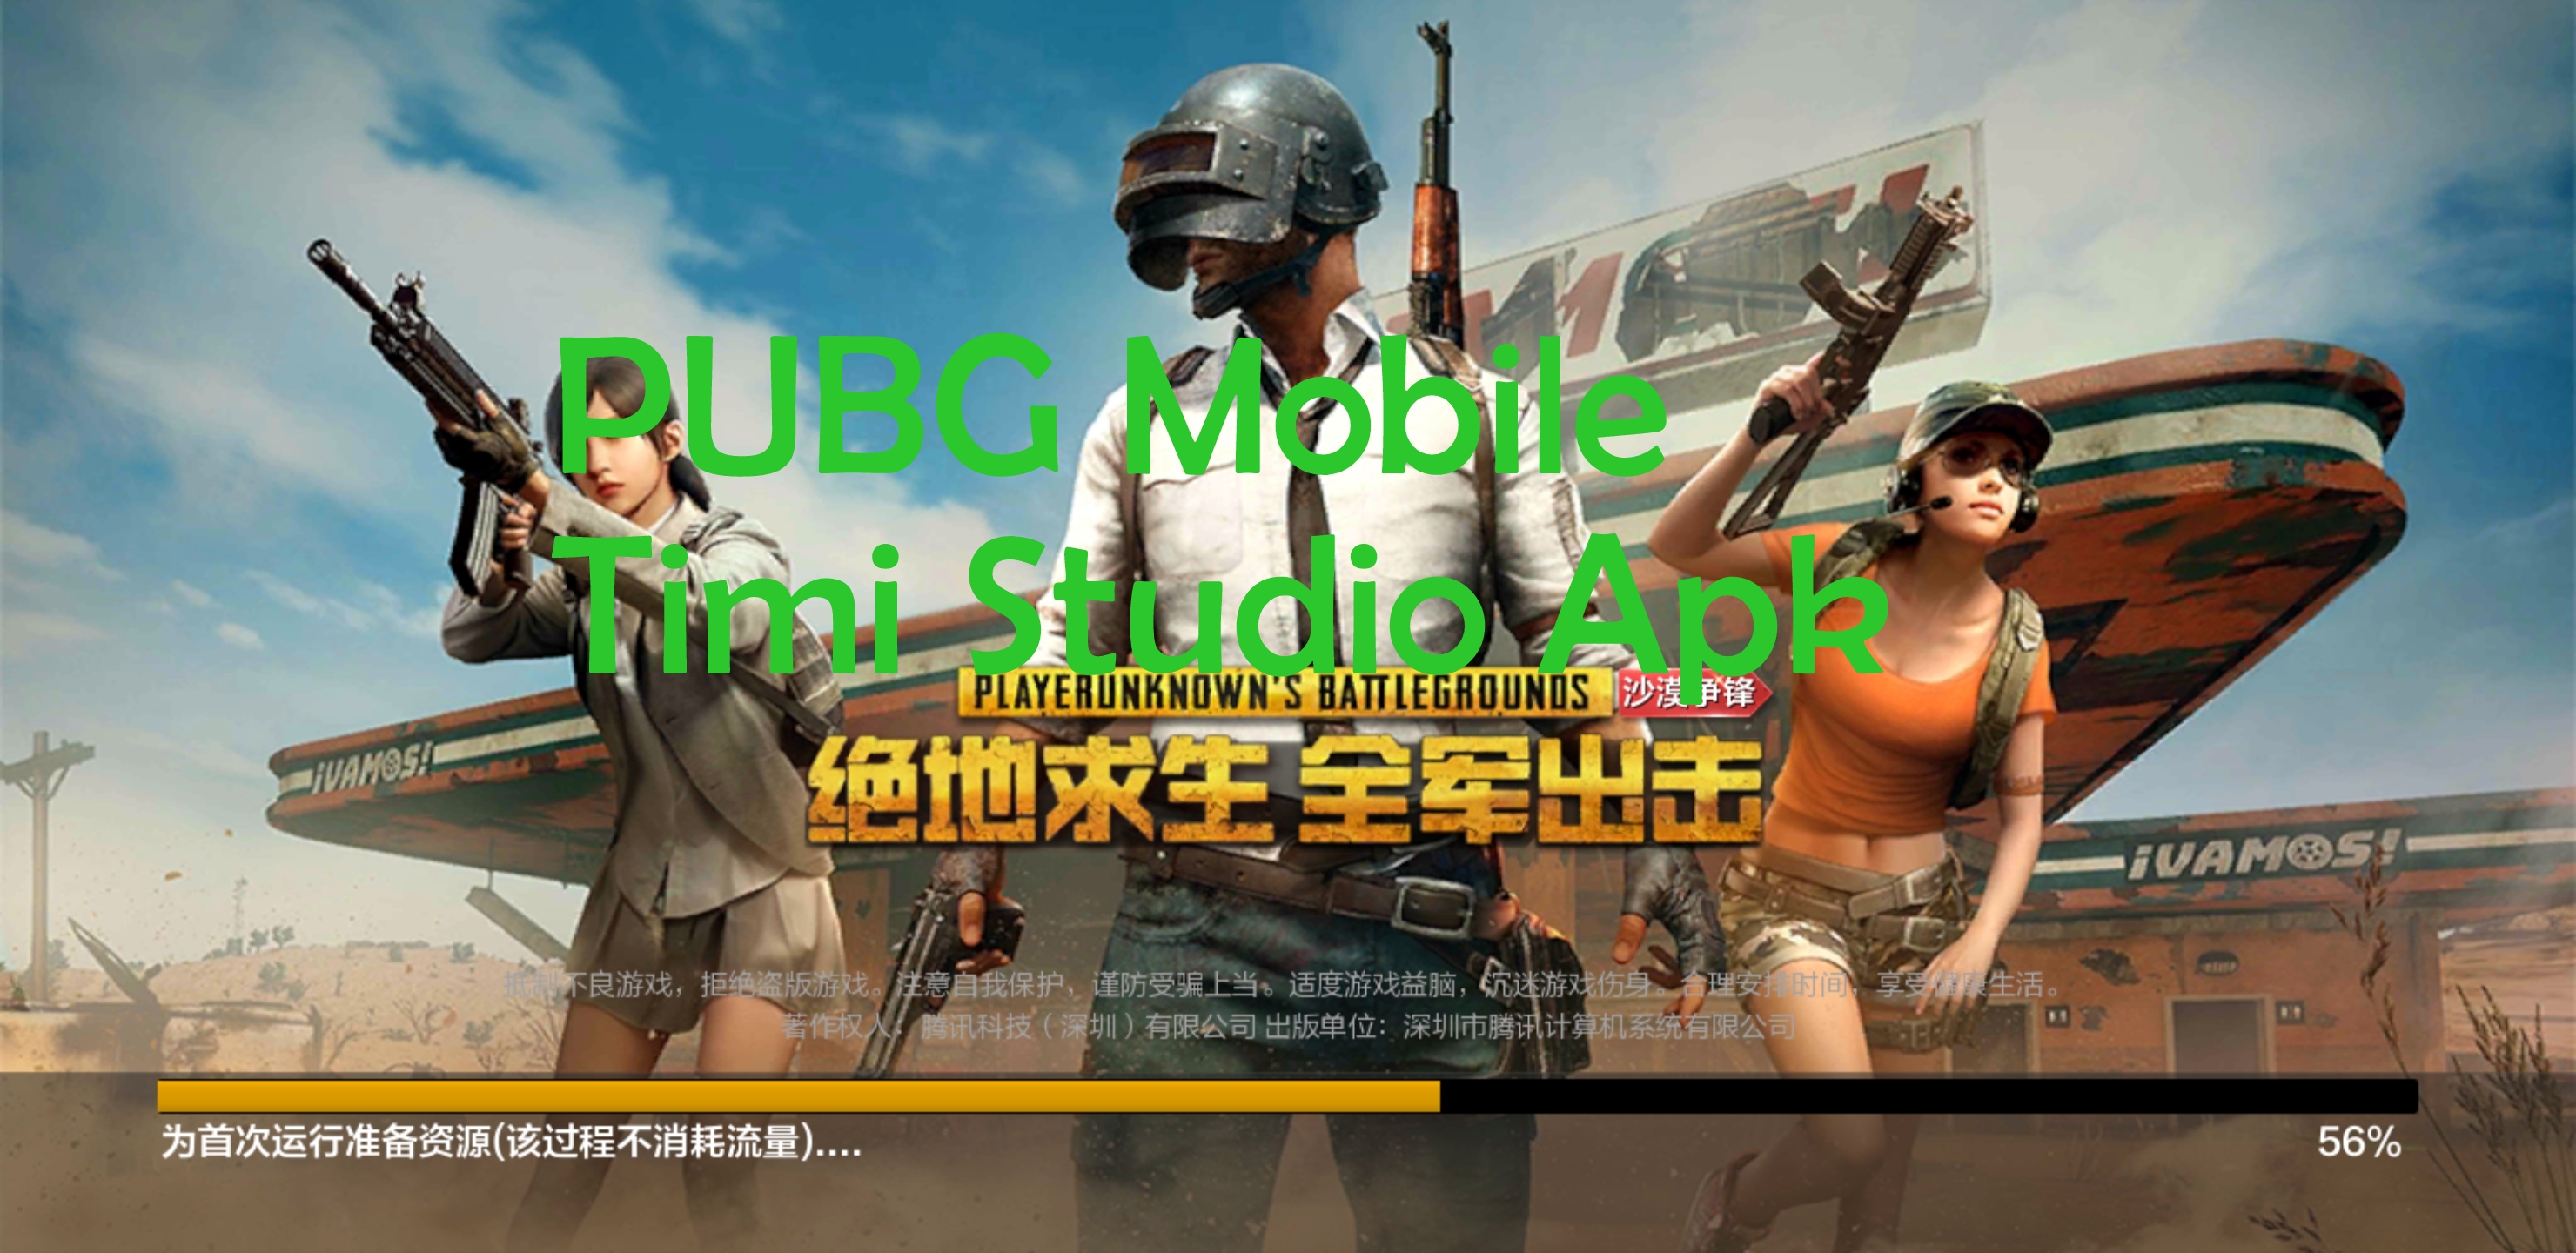 PUBG Mobile Timi Studio Apk